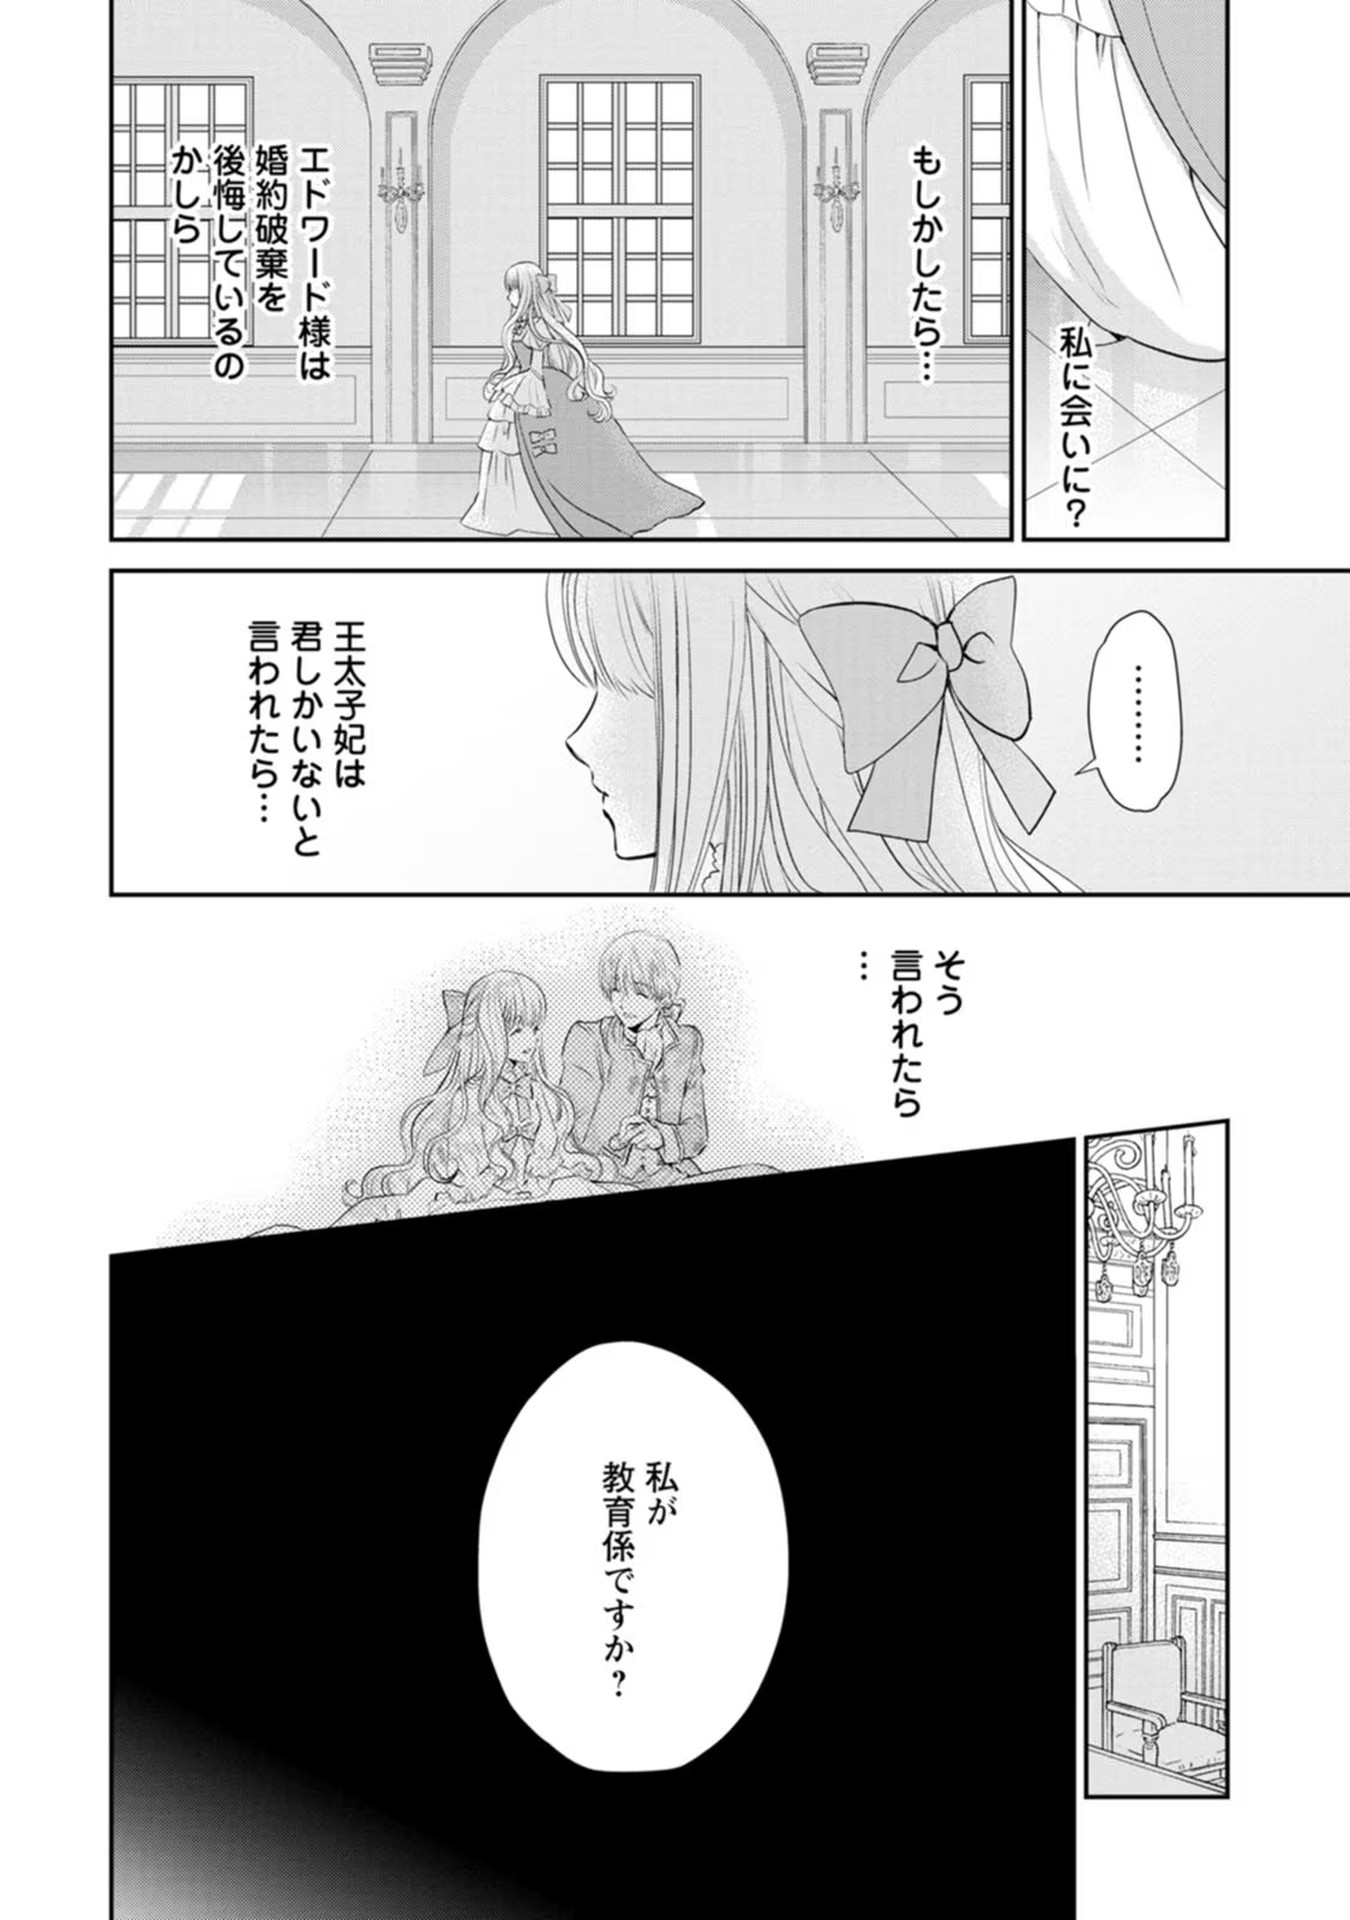 Shinjitsu no Ai wo Mitsuketa to Iwarete Konyaku Haki Saretanode, Fukuen wo Semararete mo Imasara mo Osoi desu! - Chapter 1 - Page 20